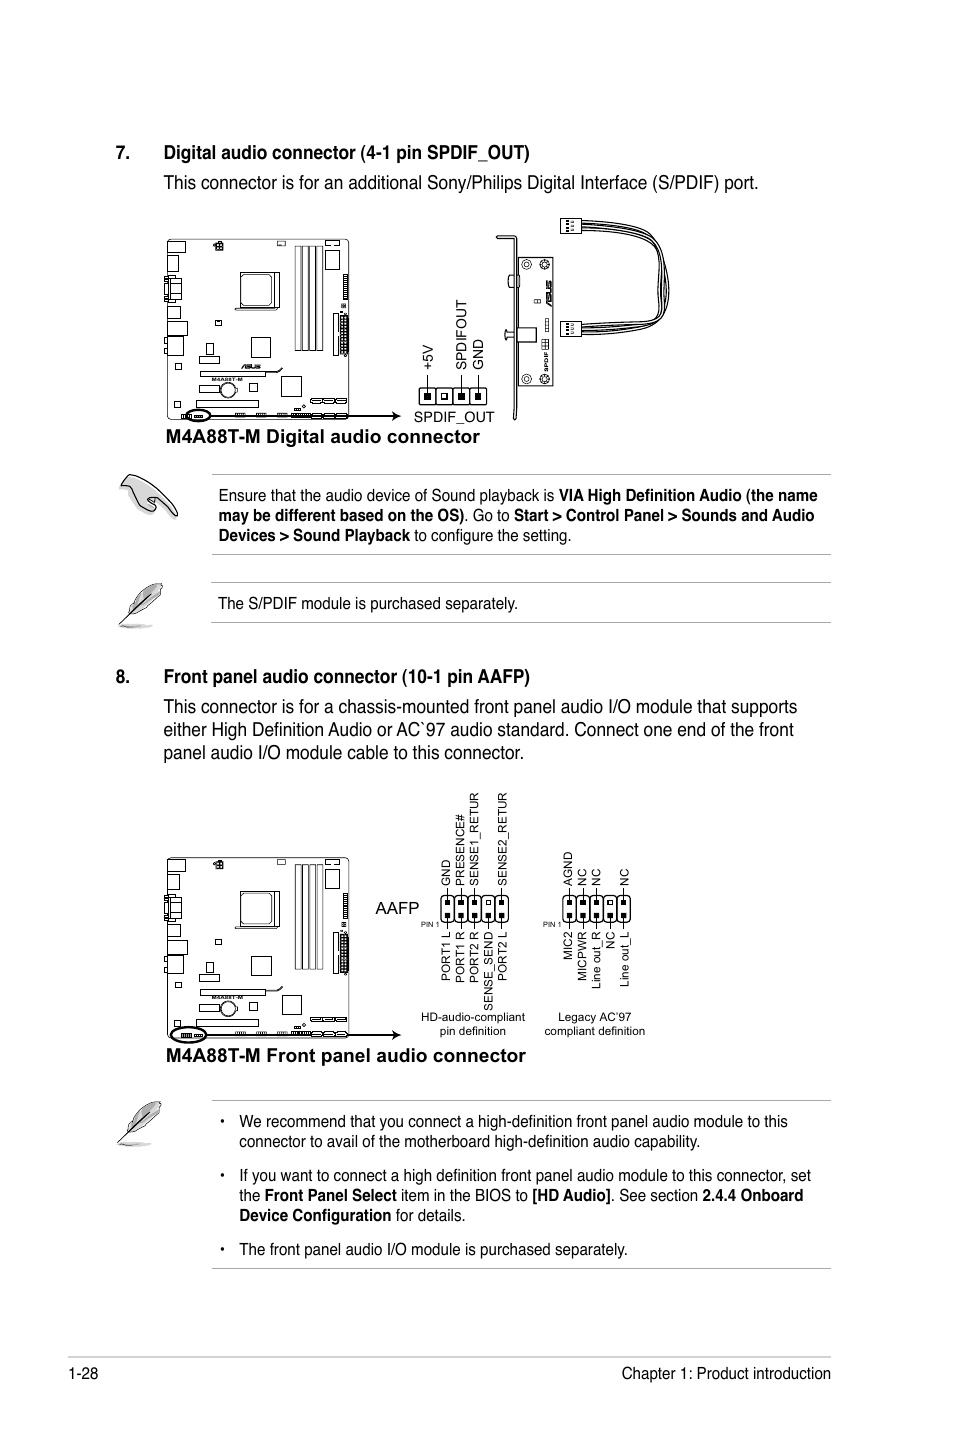 M4a88t-m digital audio connector, M4a88t-m front panel audio connector | Asus  M4A88T-M/USB3 User Manual | Page 40 / 70 | Original mode